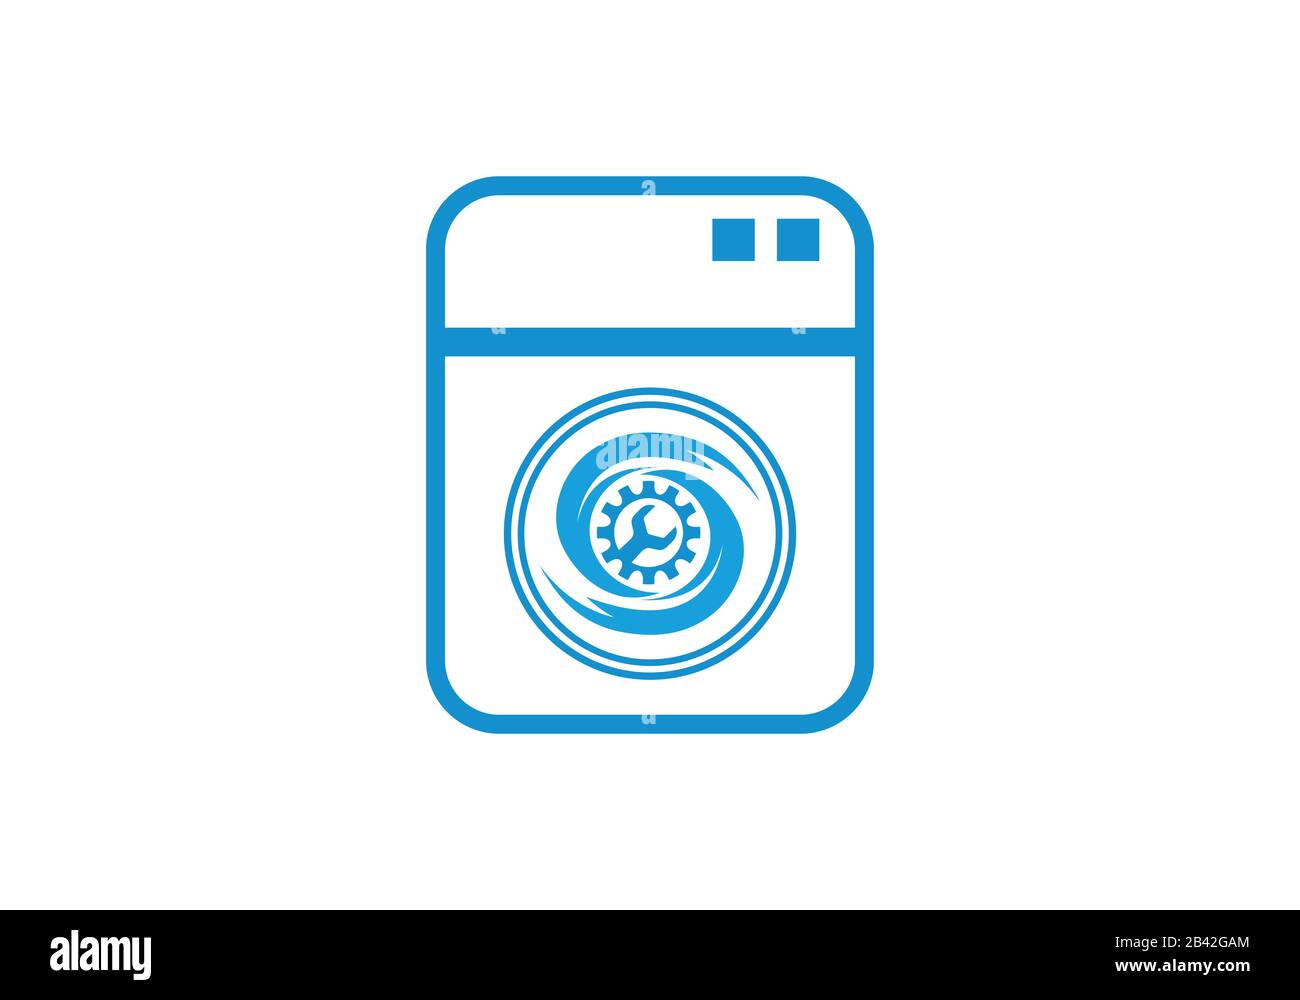 Logo machine à laver, lave-linge, Bon pour le logo d'entreprise.  Illustration vectorielle Image Vectorielle Stock - Alamy